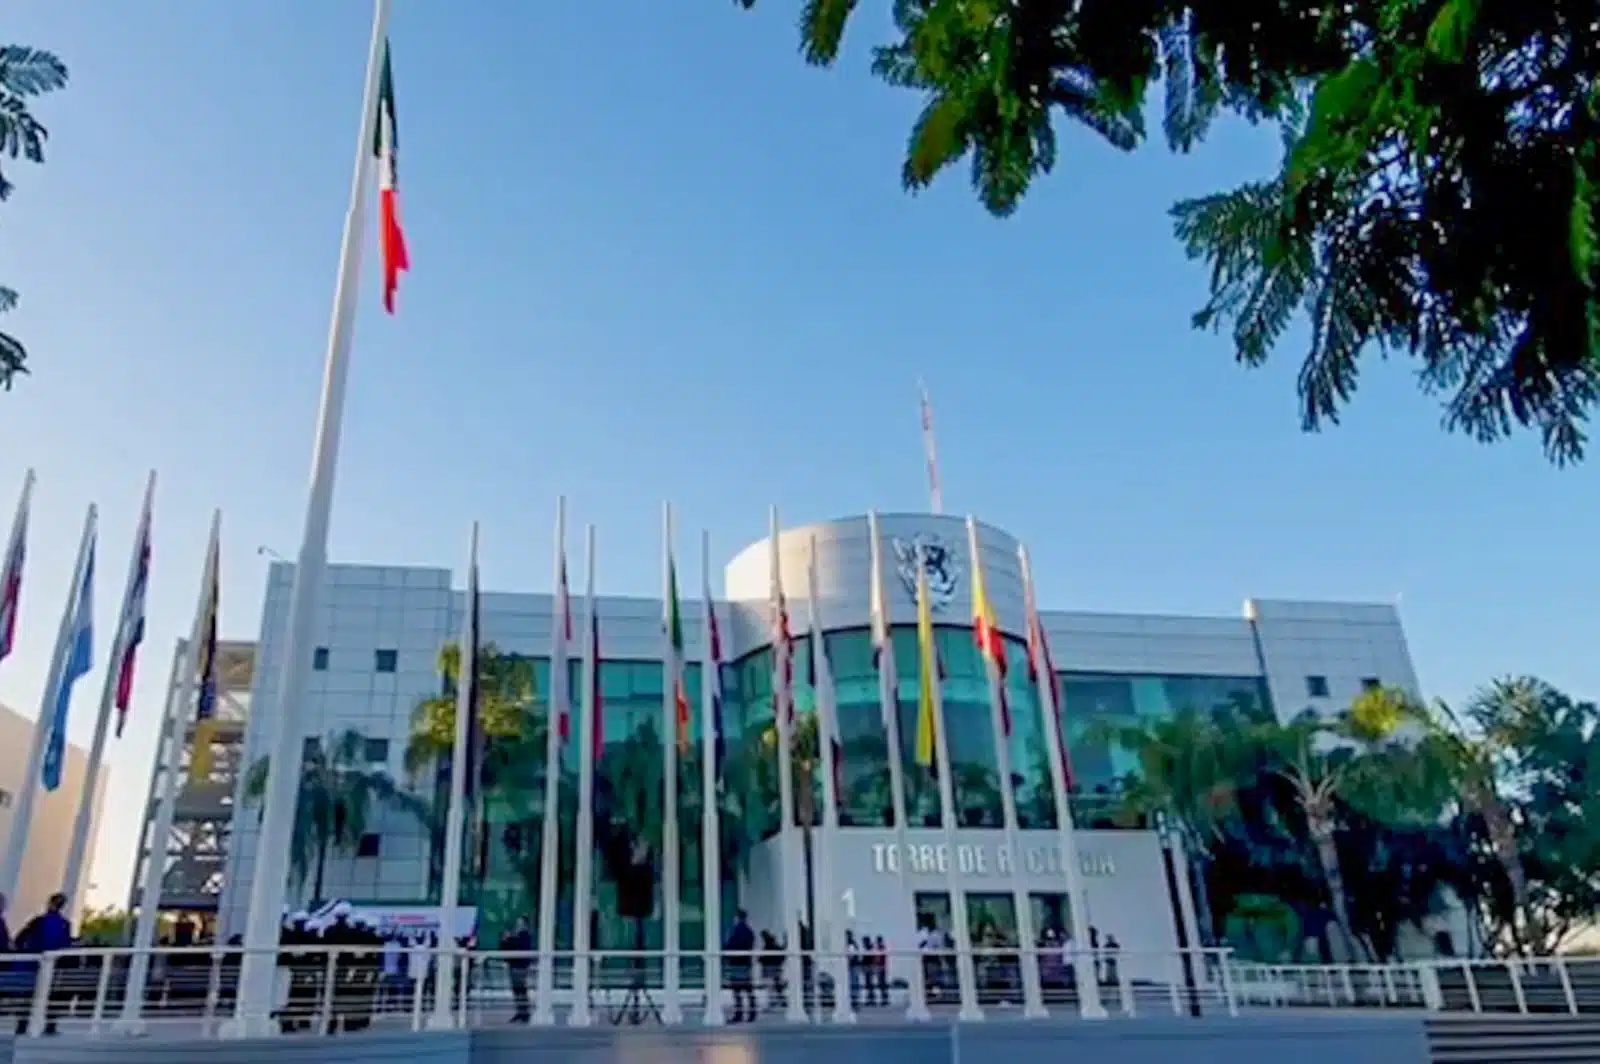 Edificio de la UAS, banderas una de ellas de México, árboles y palmeras